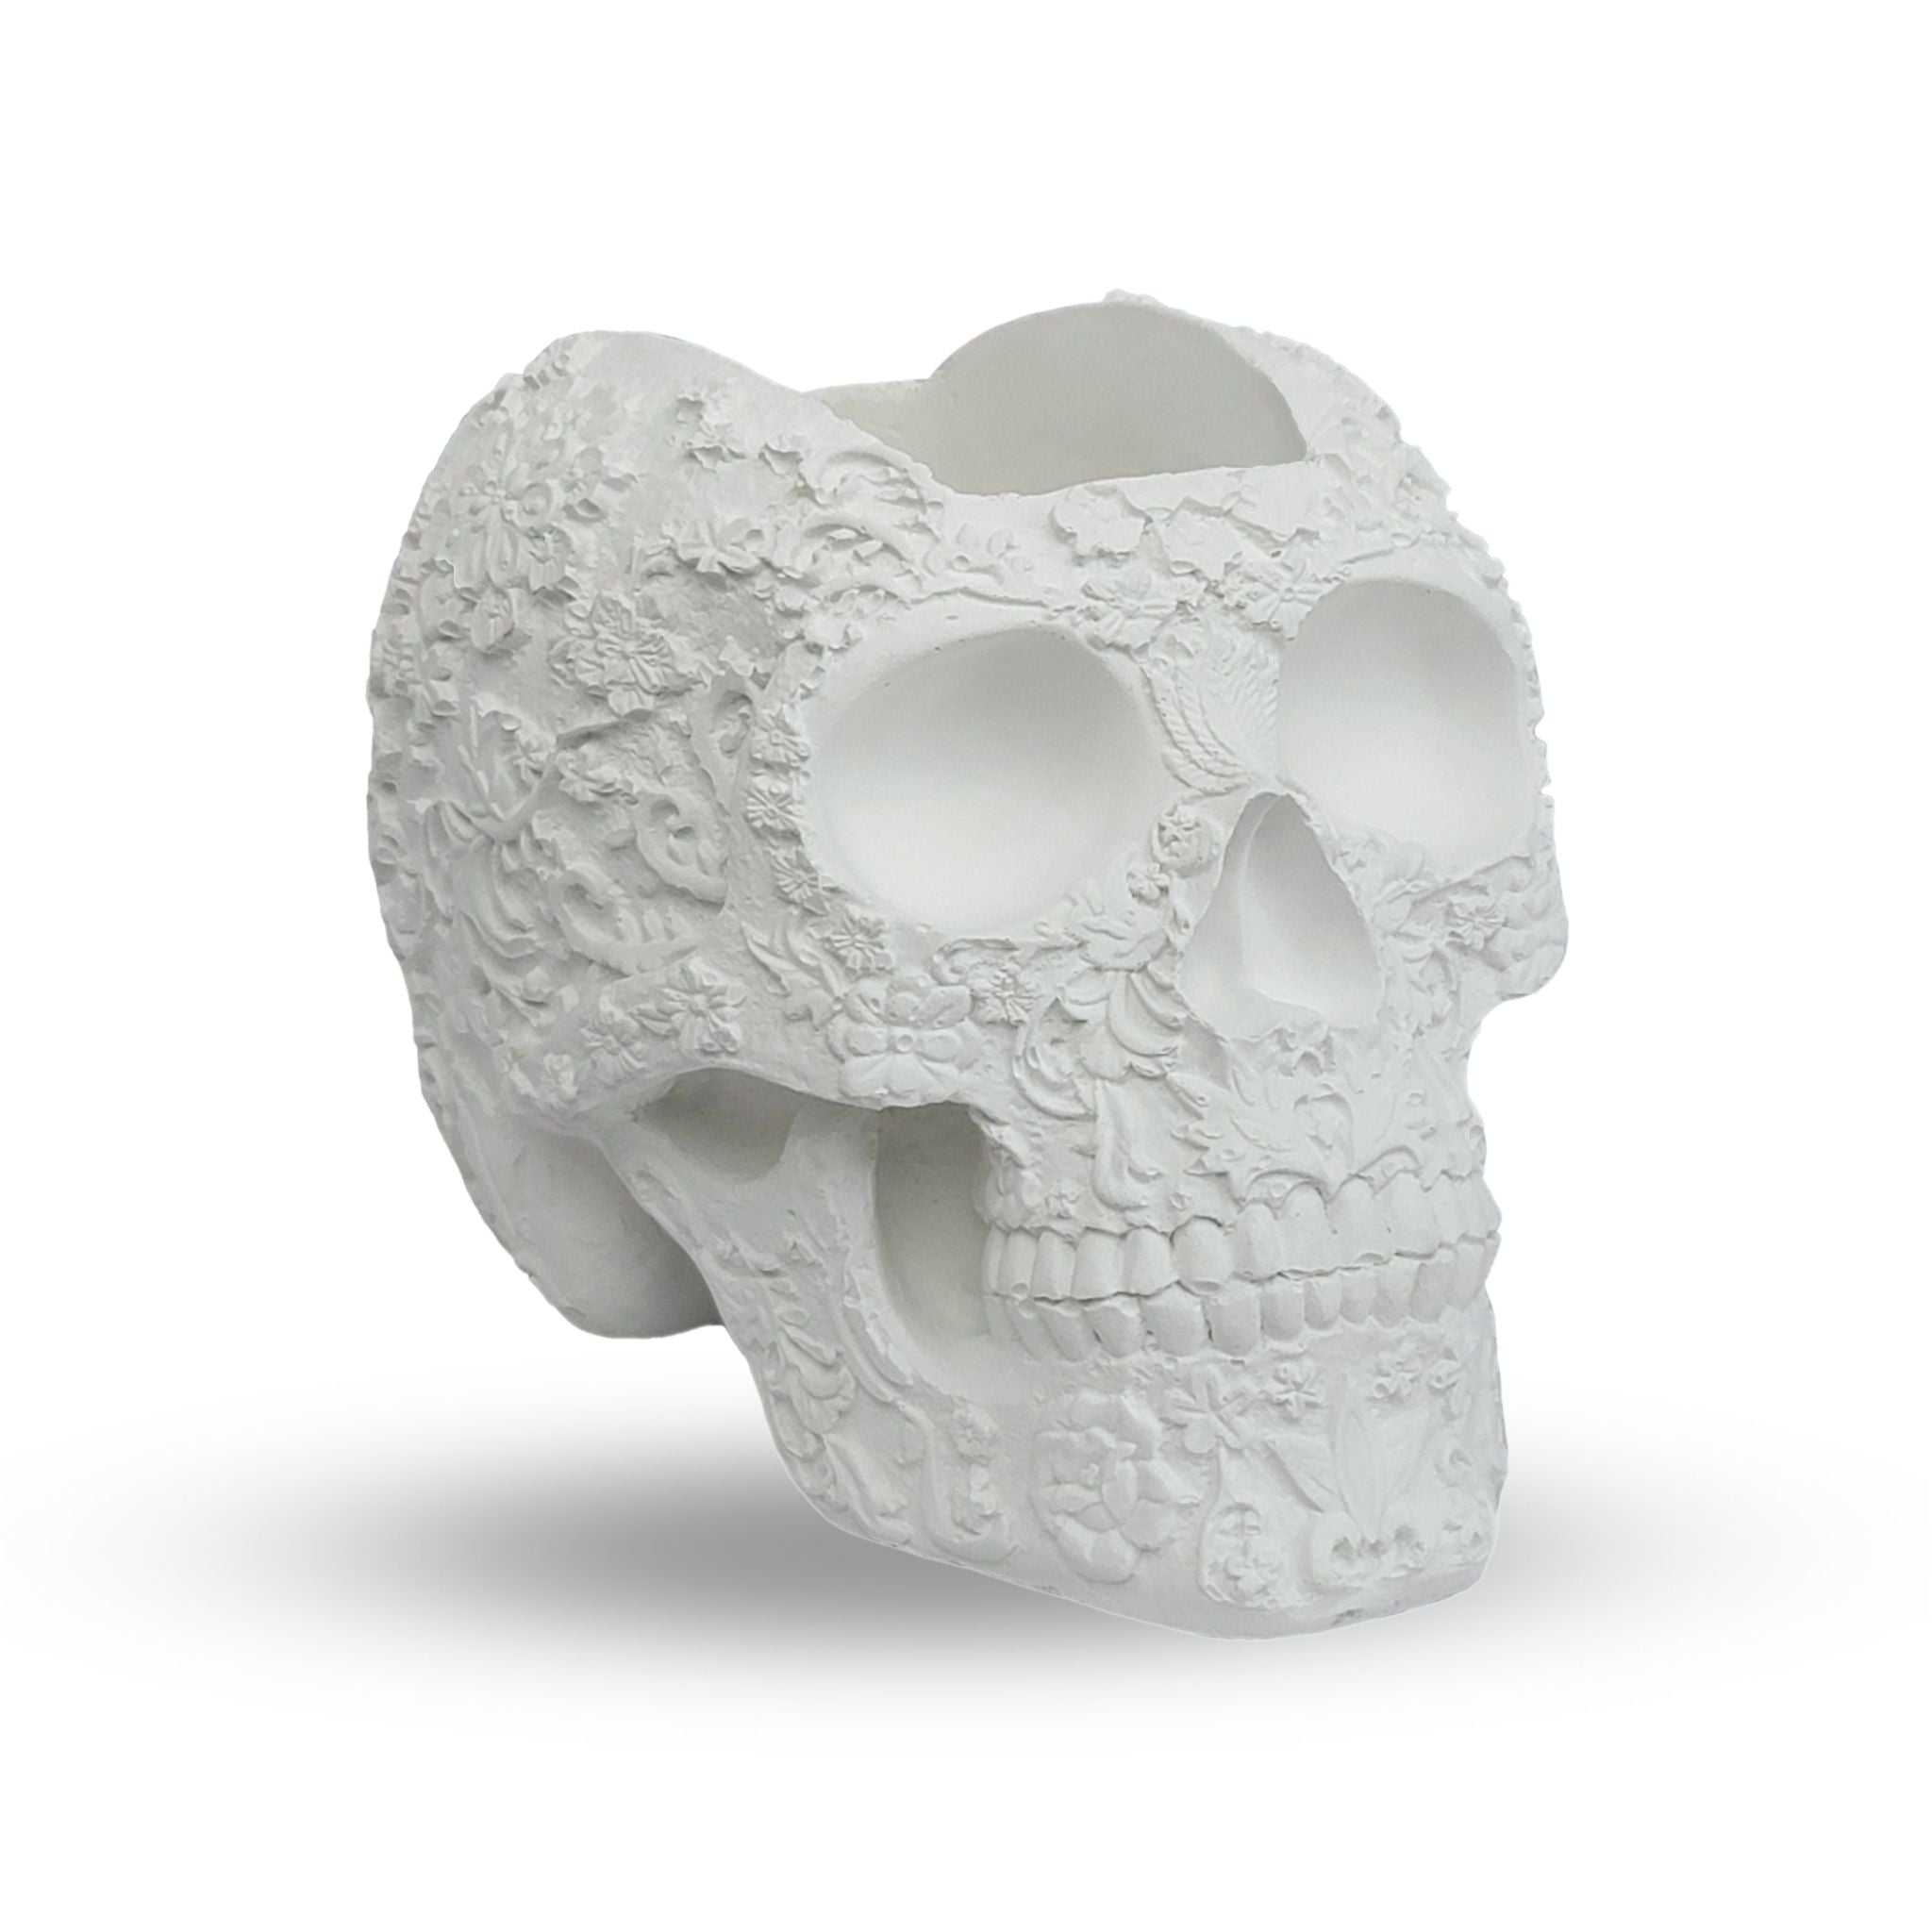 Mohawk Skull Planter - White